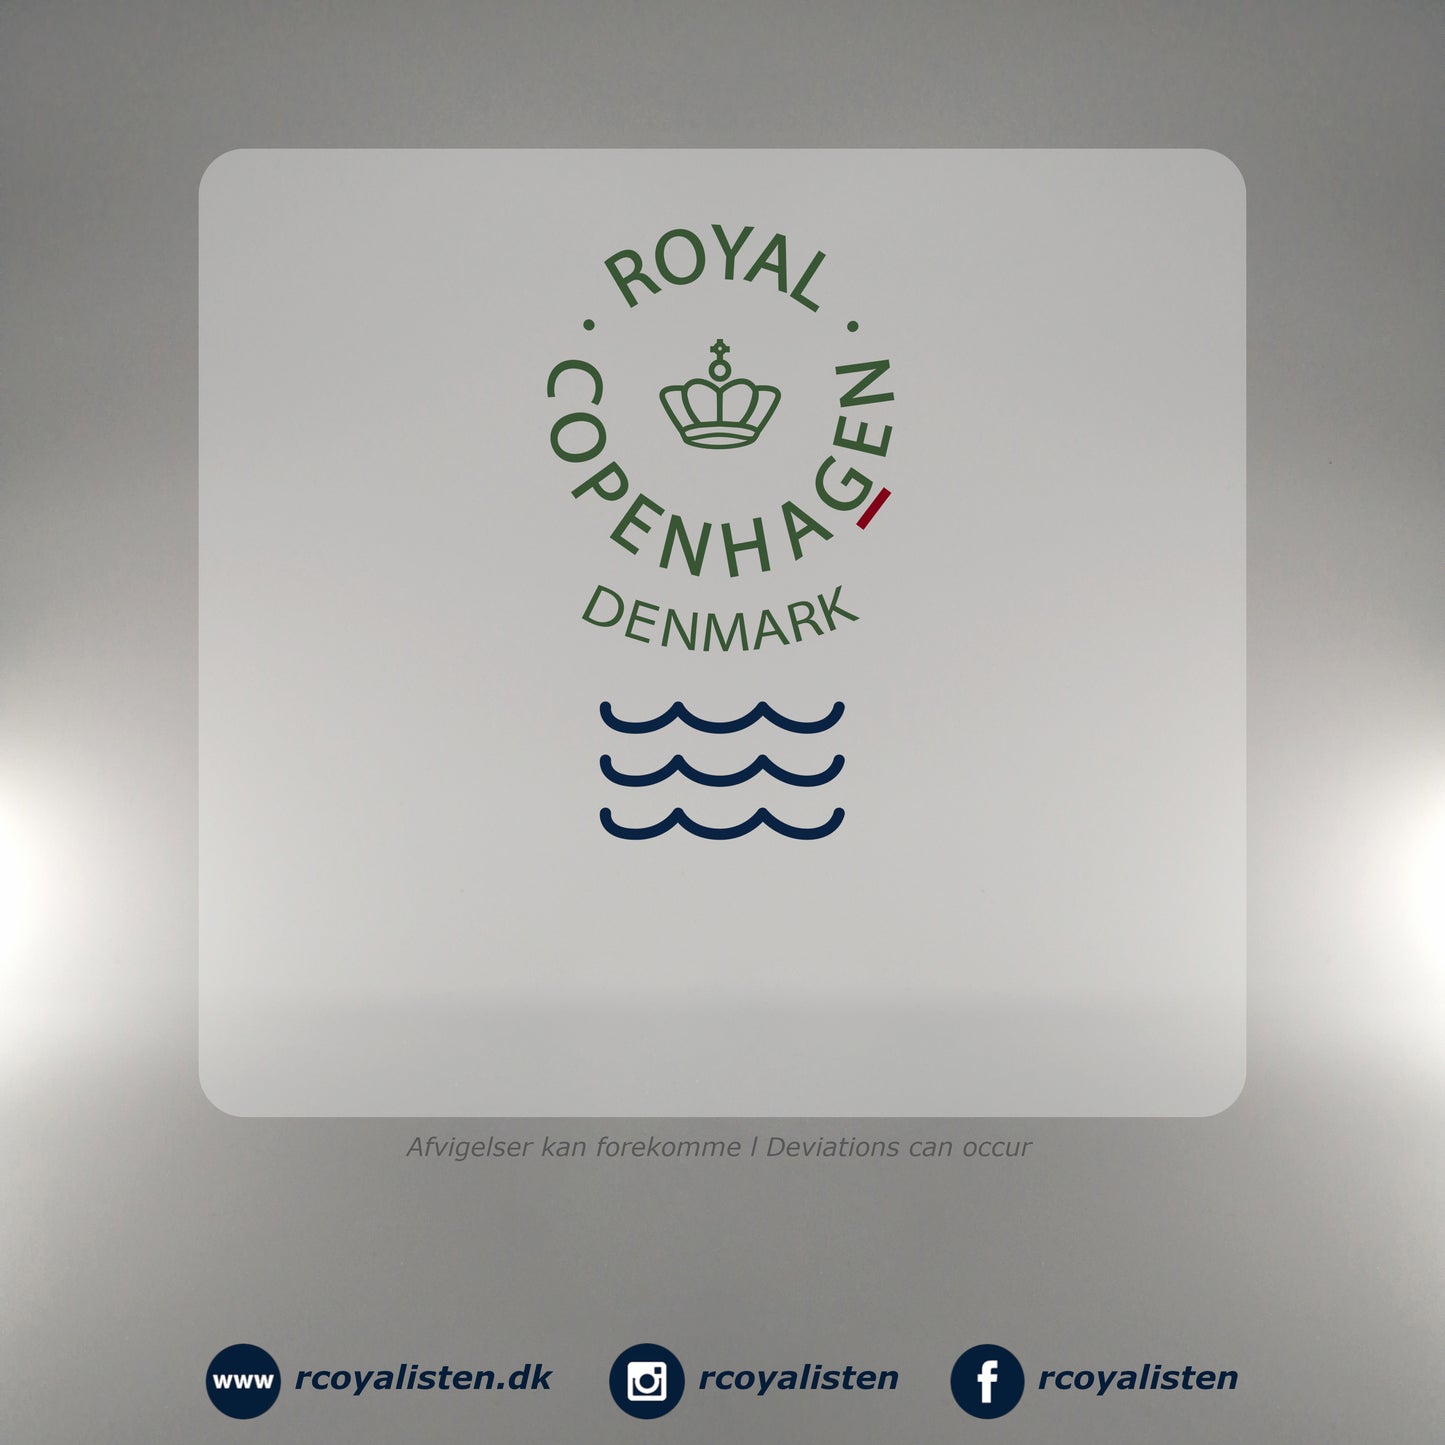 Royal Copenhagen Forhandler Platte (25 cm) - Der Königliche Porzellanmanufaktur - RCoyalisten.dk